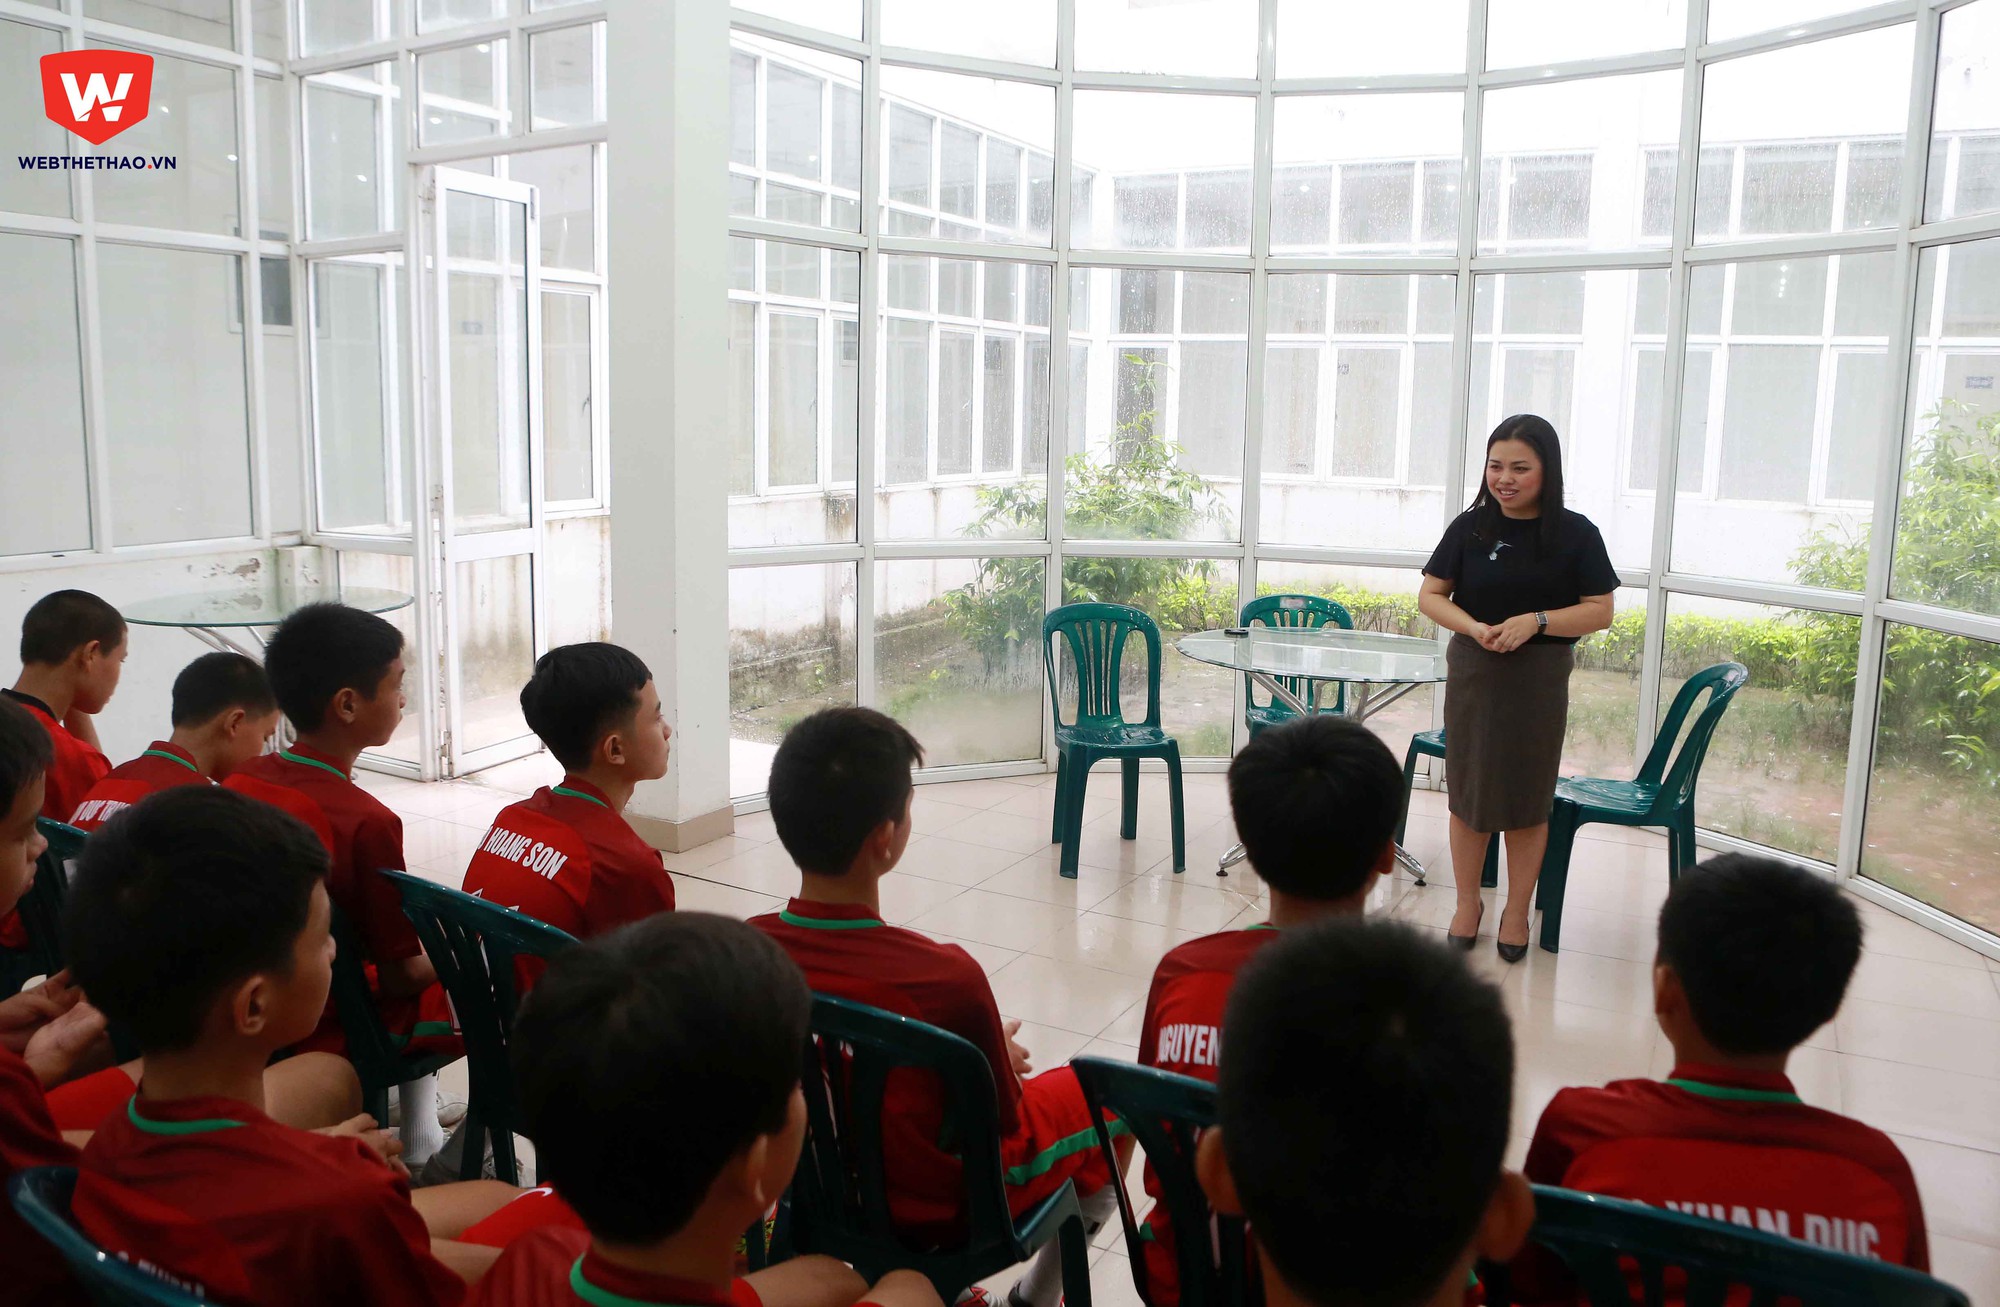 Sau giờ nghỉ trưa, toàn đội có buổi họp trước khi ra sân thi đấu. Bà Nguyễn Thu Hường, Phó TGĐ Công ty Cổ phần Thể thao 24h phát biểu chào mừng và căn rặn toàn đội.